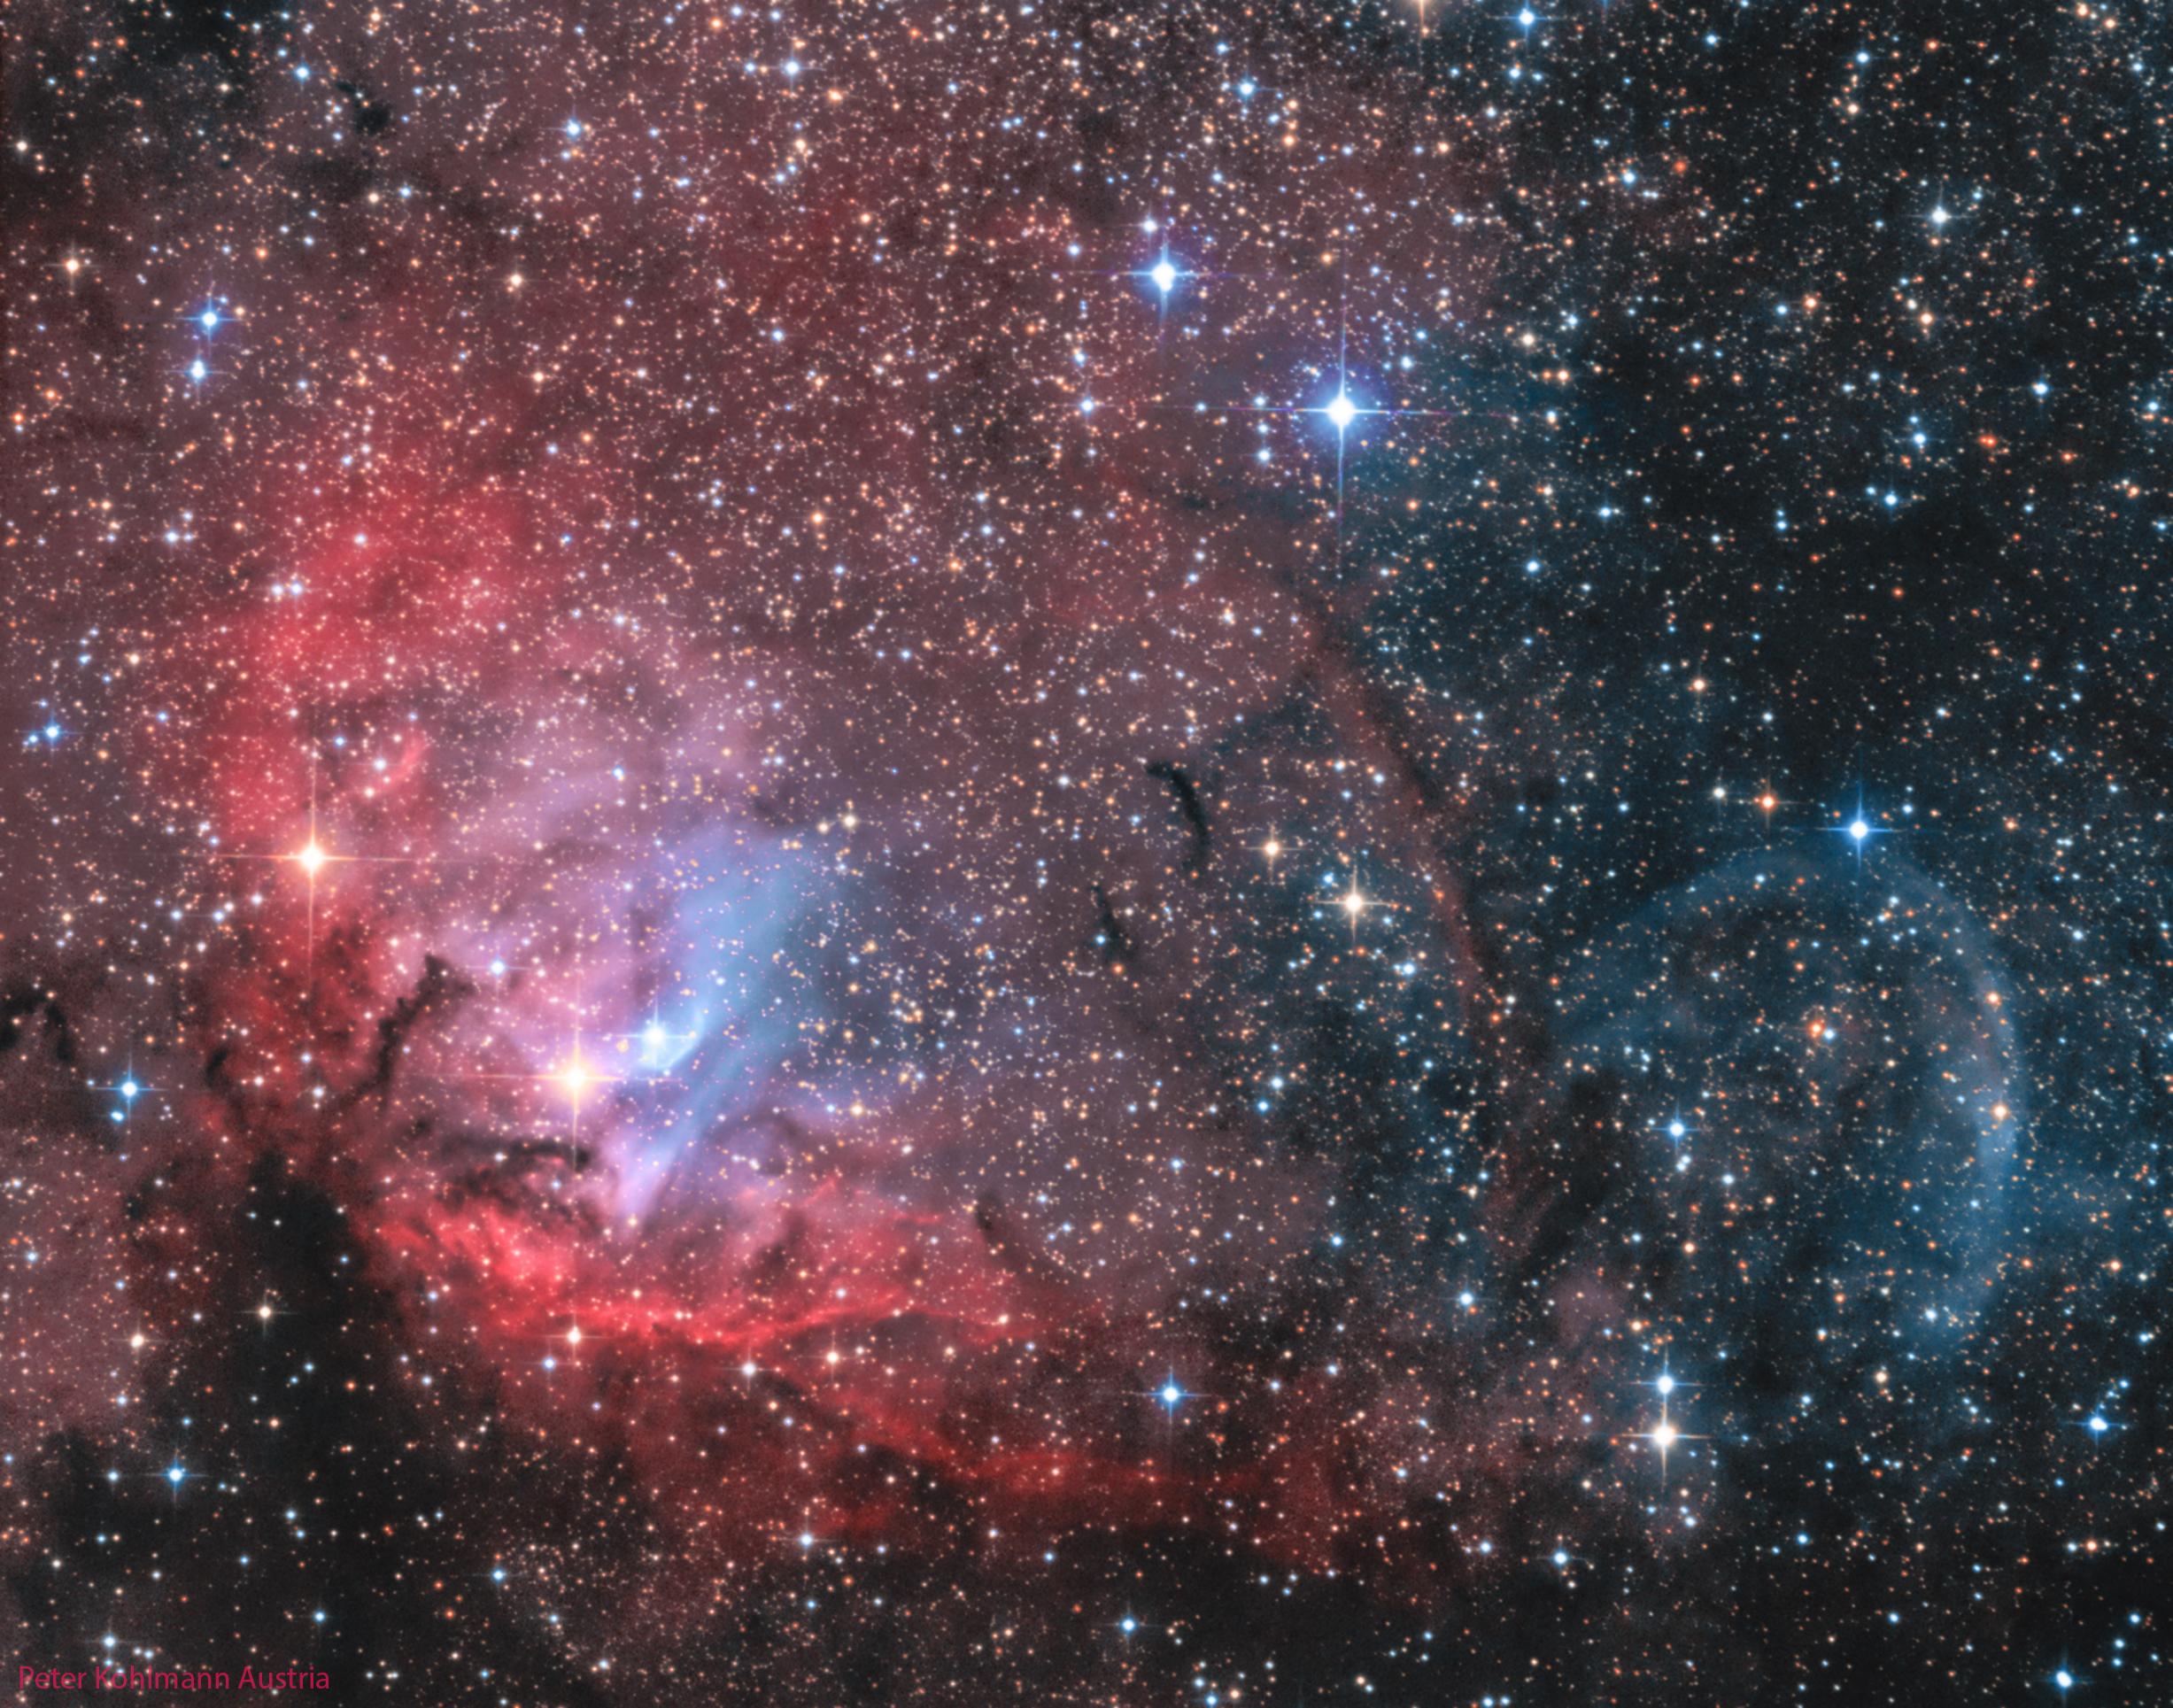 سديم محمر يبدو كزهرة متفتّحة مع امتداد مساحات زرقاء وداكنة والكثير من النجوم